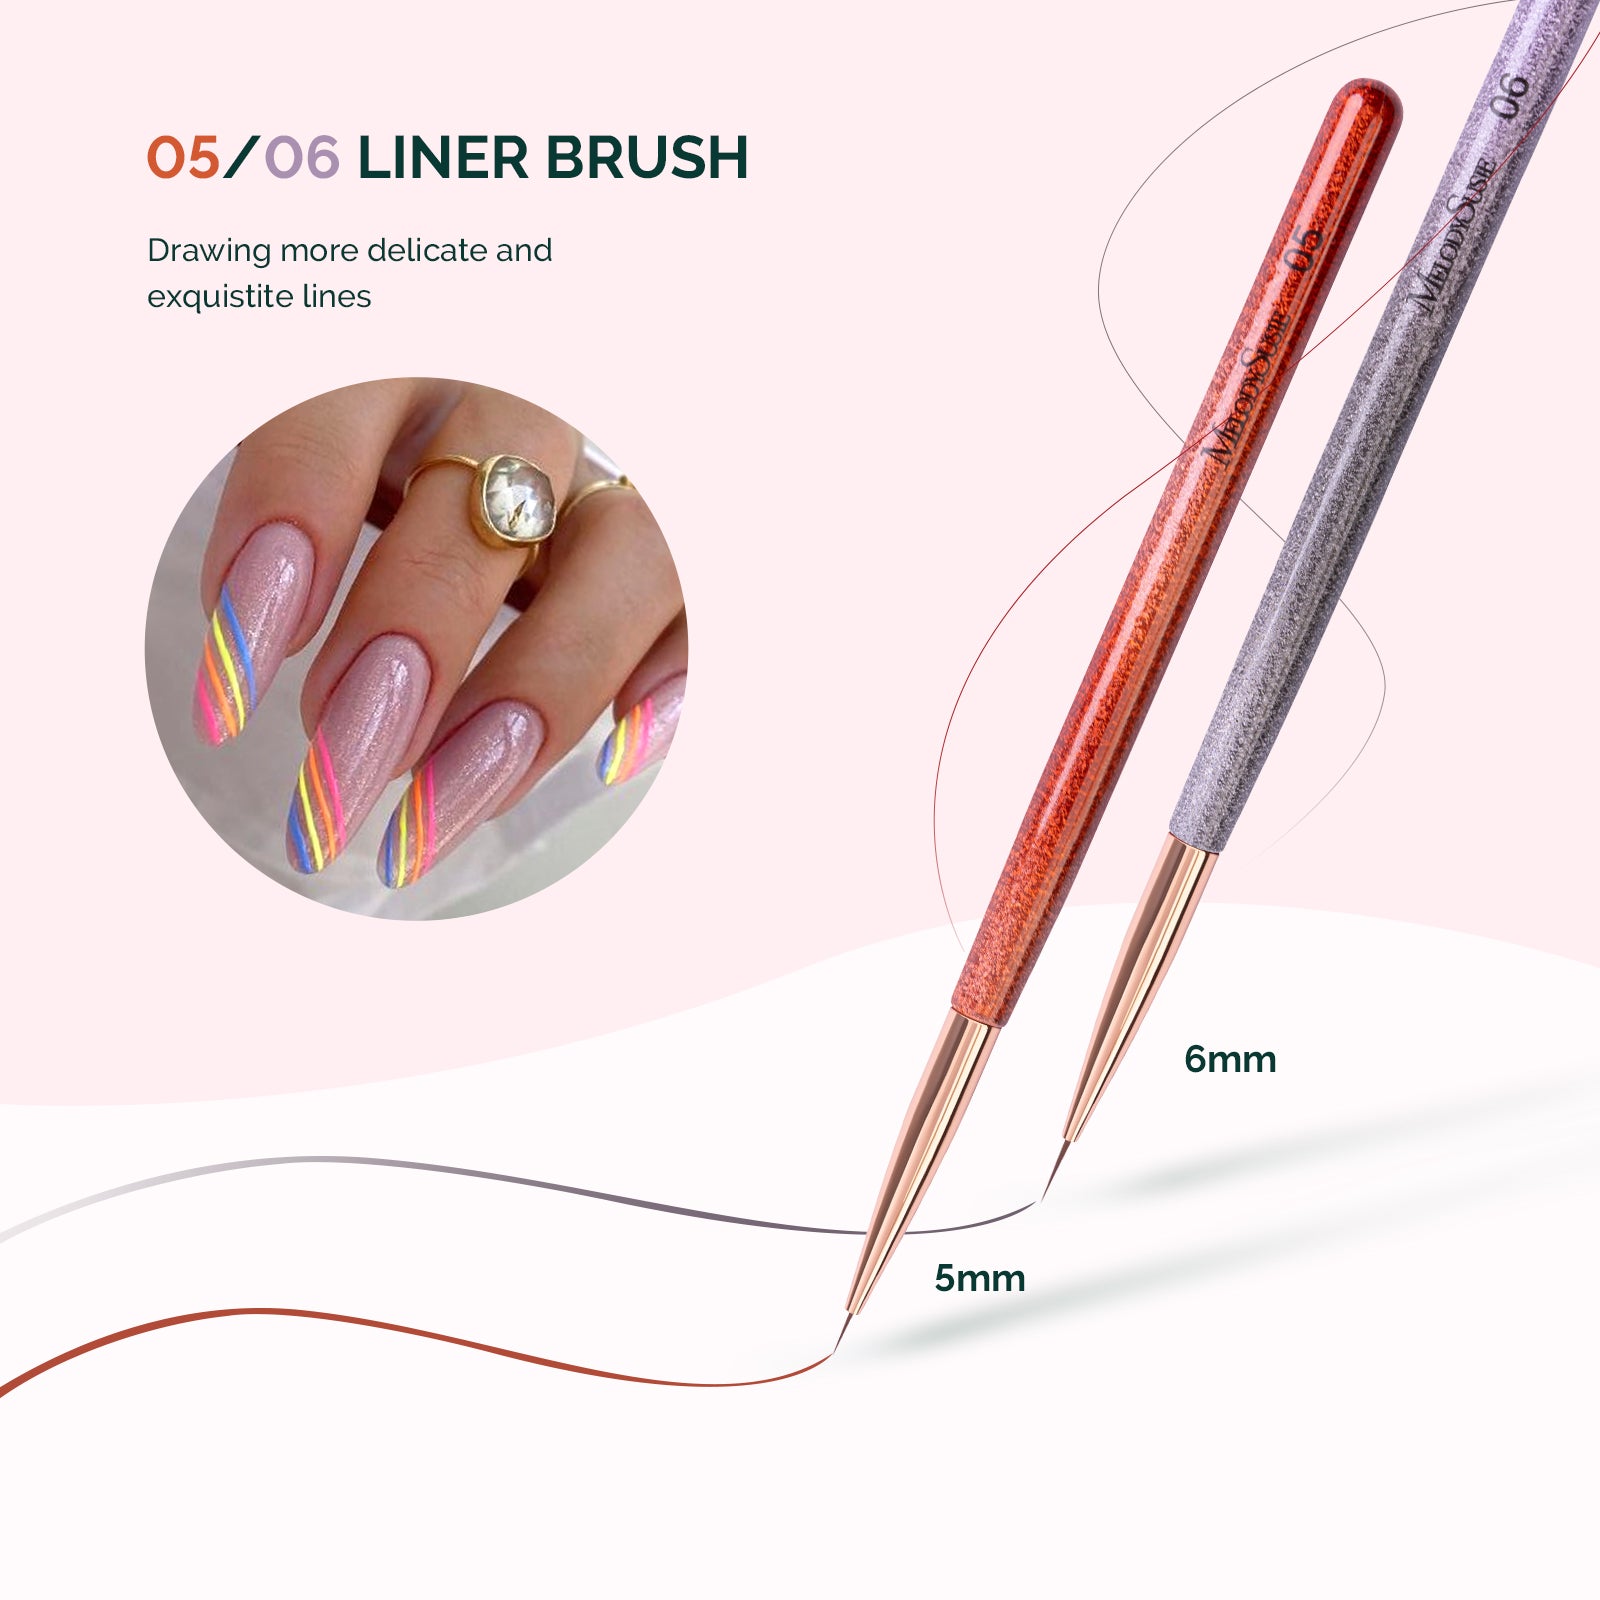 Pink Crystal Liner brush set (Nail Art Liner Brushes Set- 3pcs Nail Ar